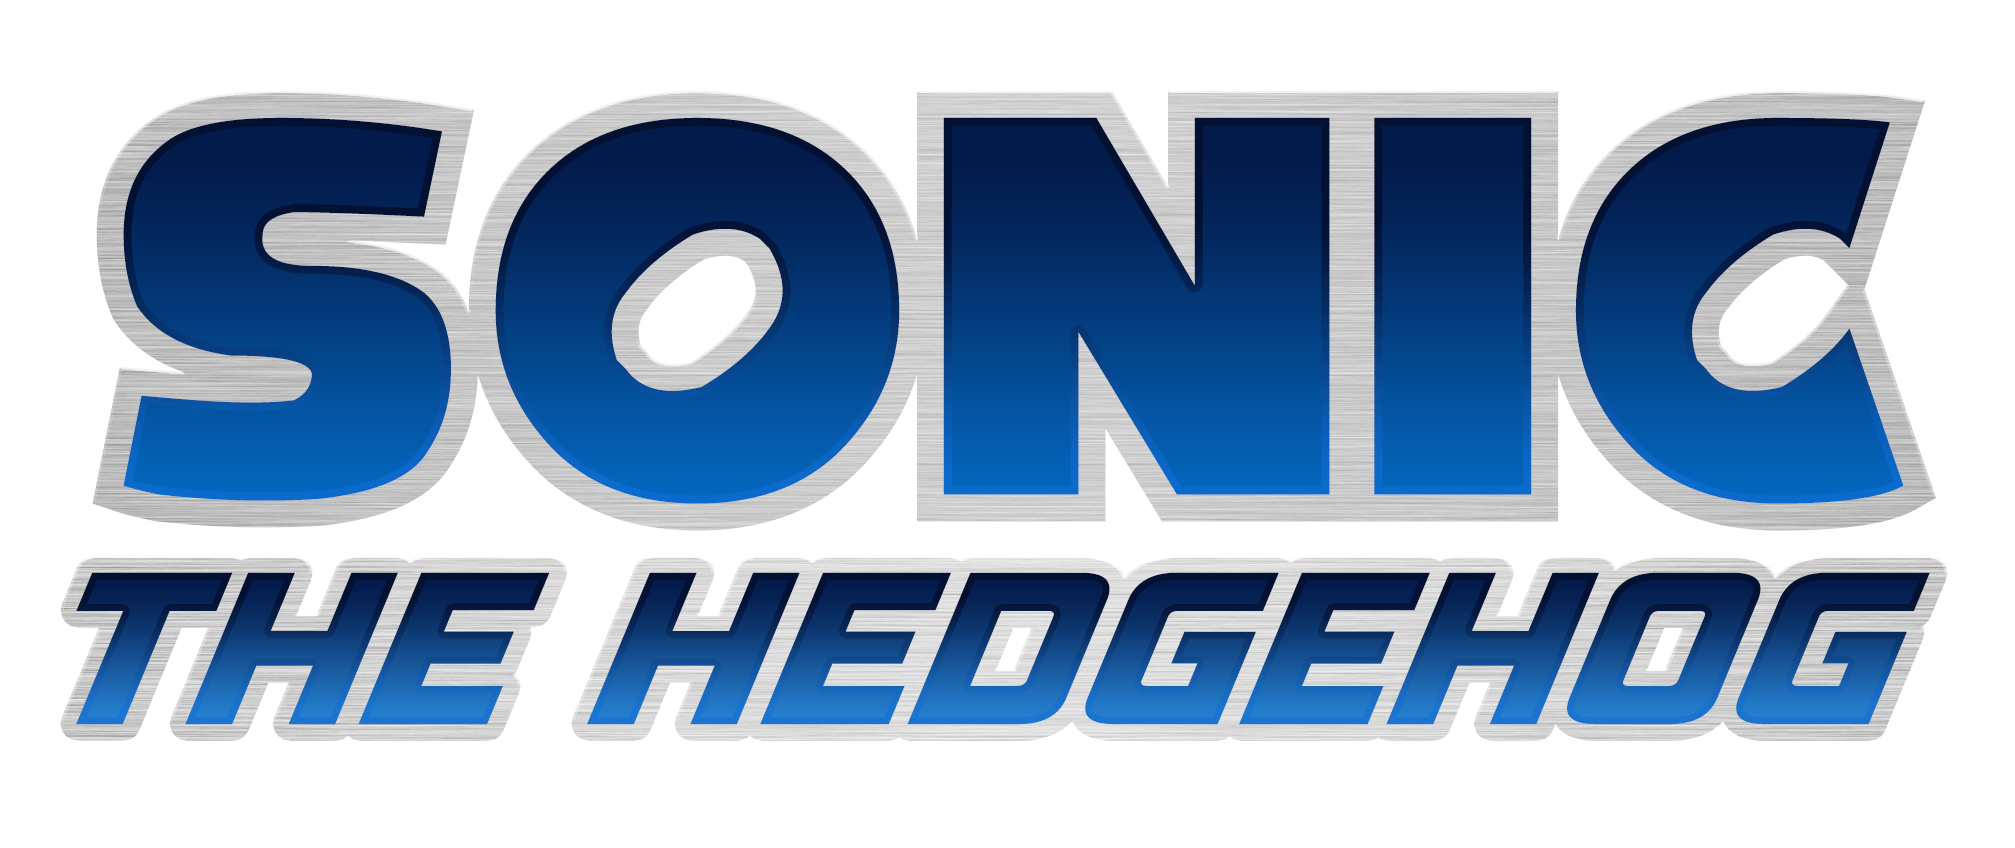 Sonic The Hedgehog Logo Transparent Image PNG Image